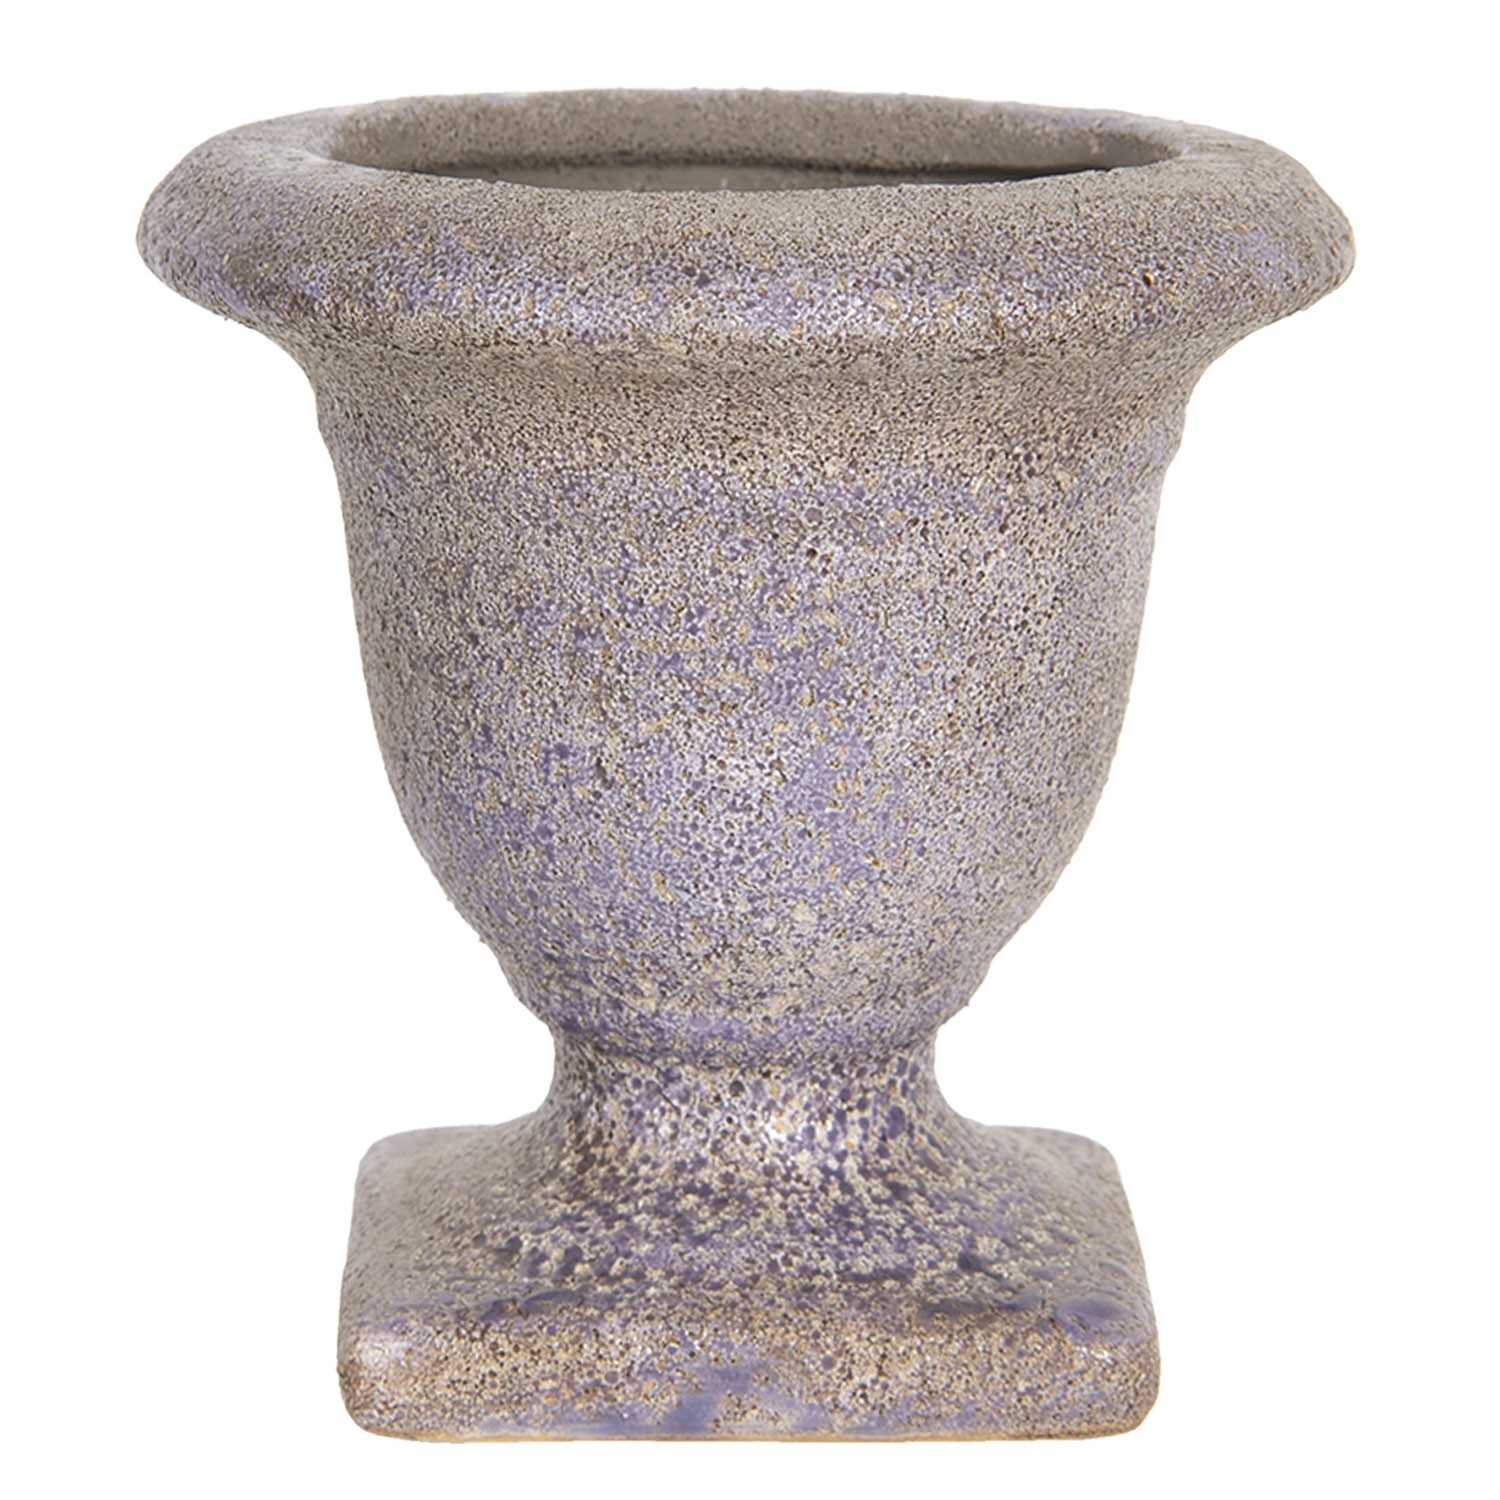 Fialový keramický květináč s patinou v antickém stylu Tasse – Ø 12*12 cm Clayre & Eef